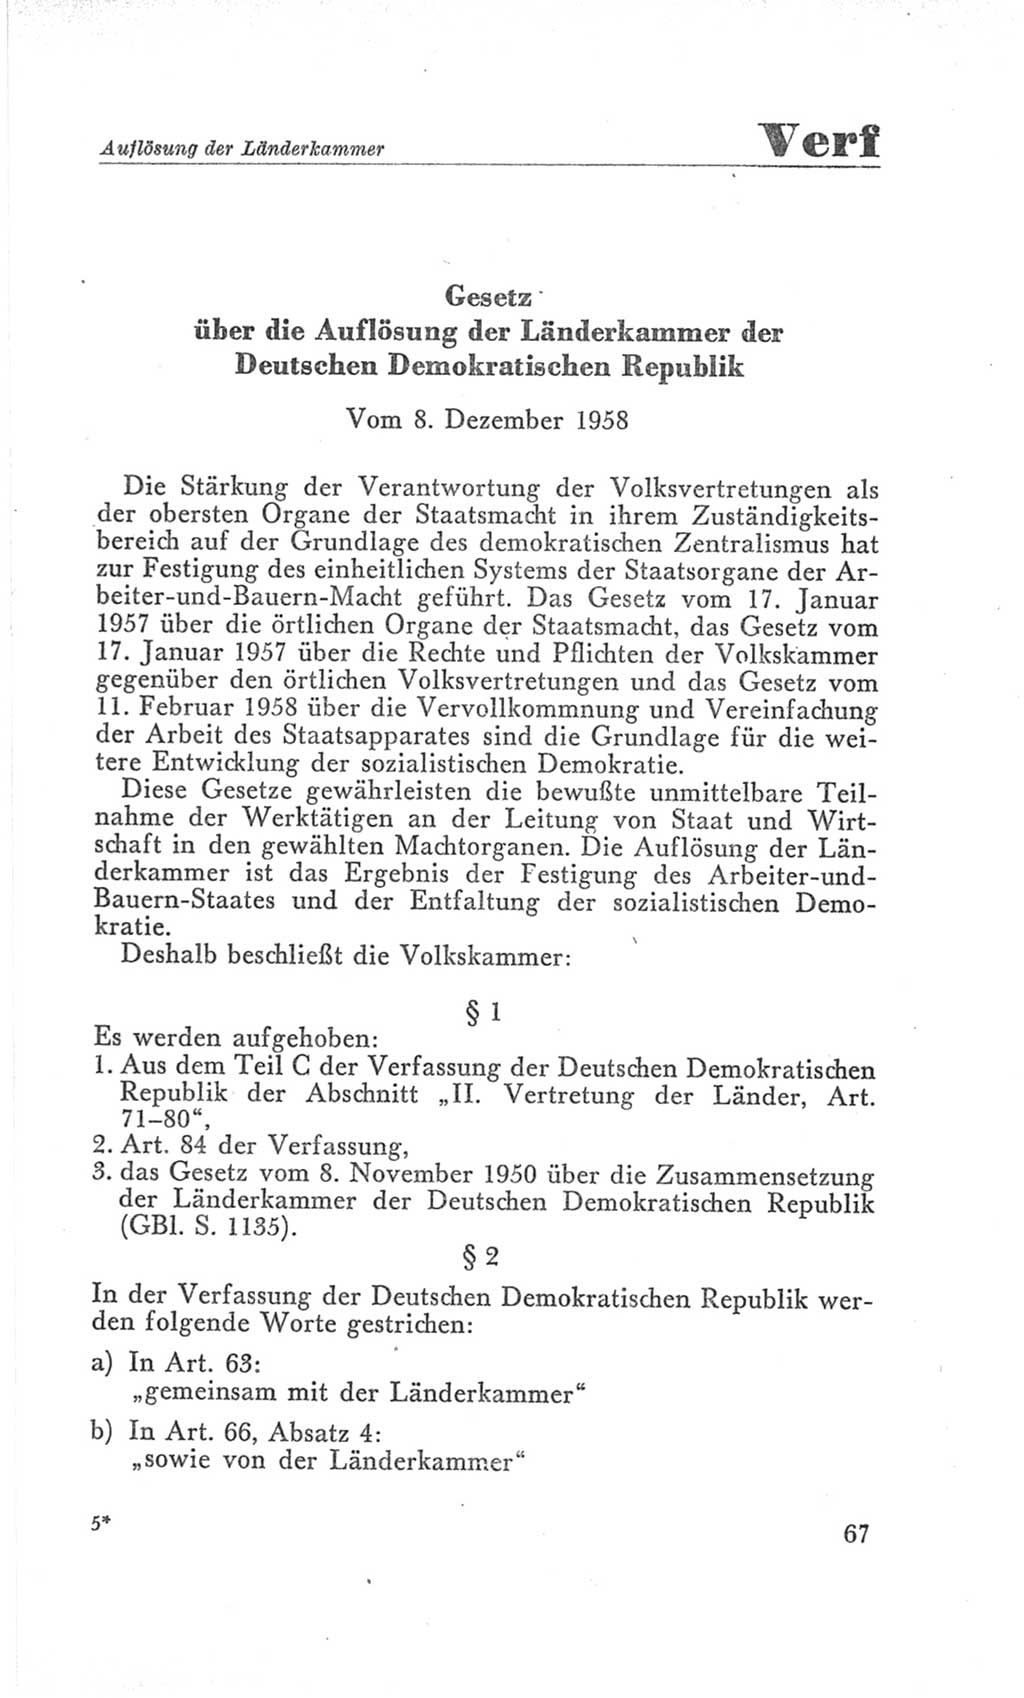 Handbuch der Volkskammer (VK) der Deutschen Demokratischen Republik (DDR), 3. Wahlperiode 1958-1963, Seite 67 (Hdb. VK. DDR 3. WP. 1958-1963, S. 67)